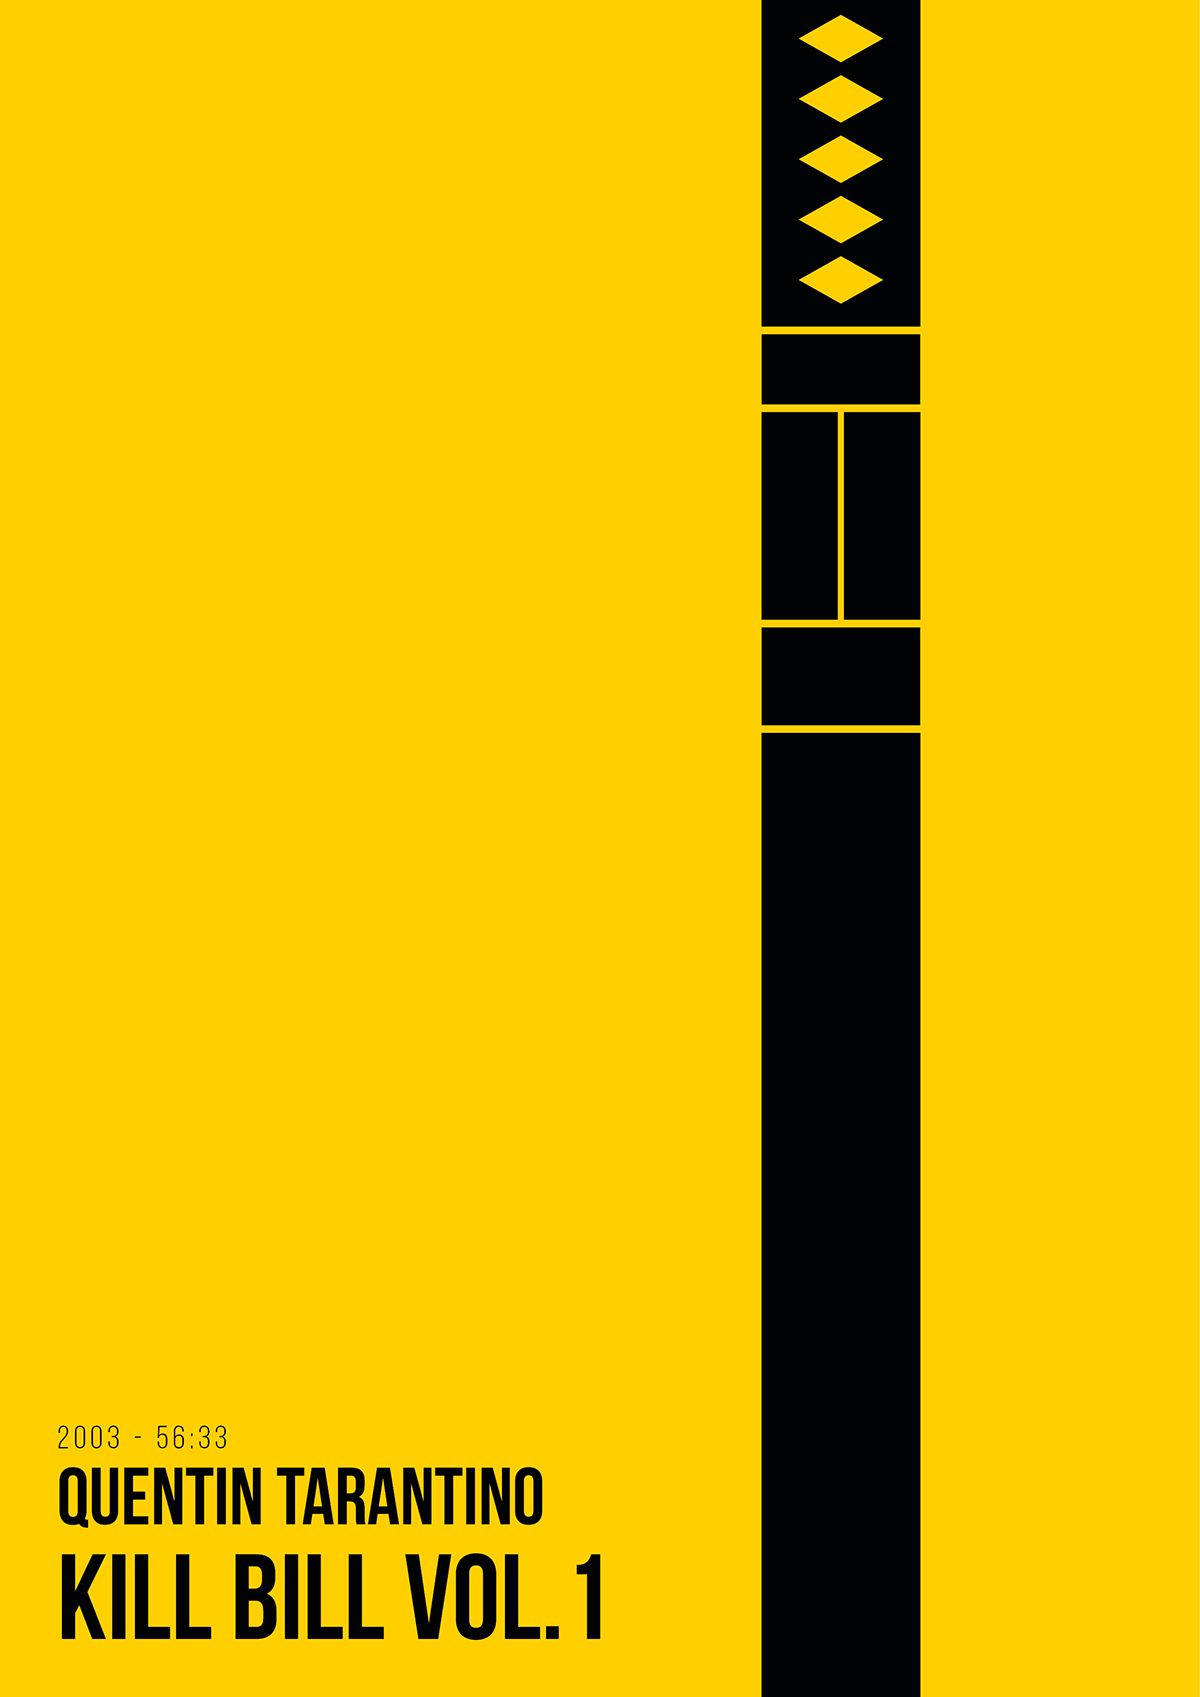 Kill Bill Minimalist Katana Poster Wallpaper